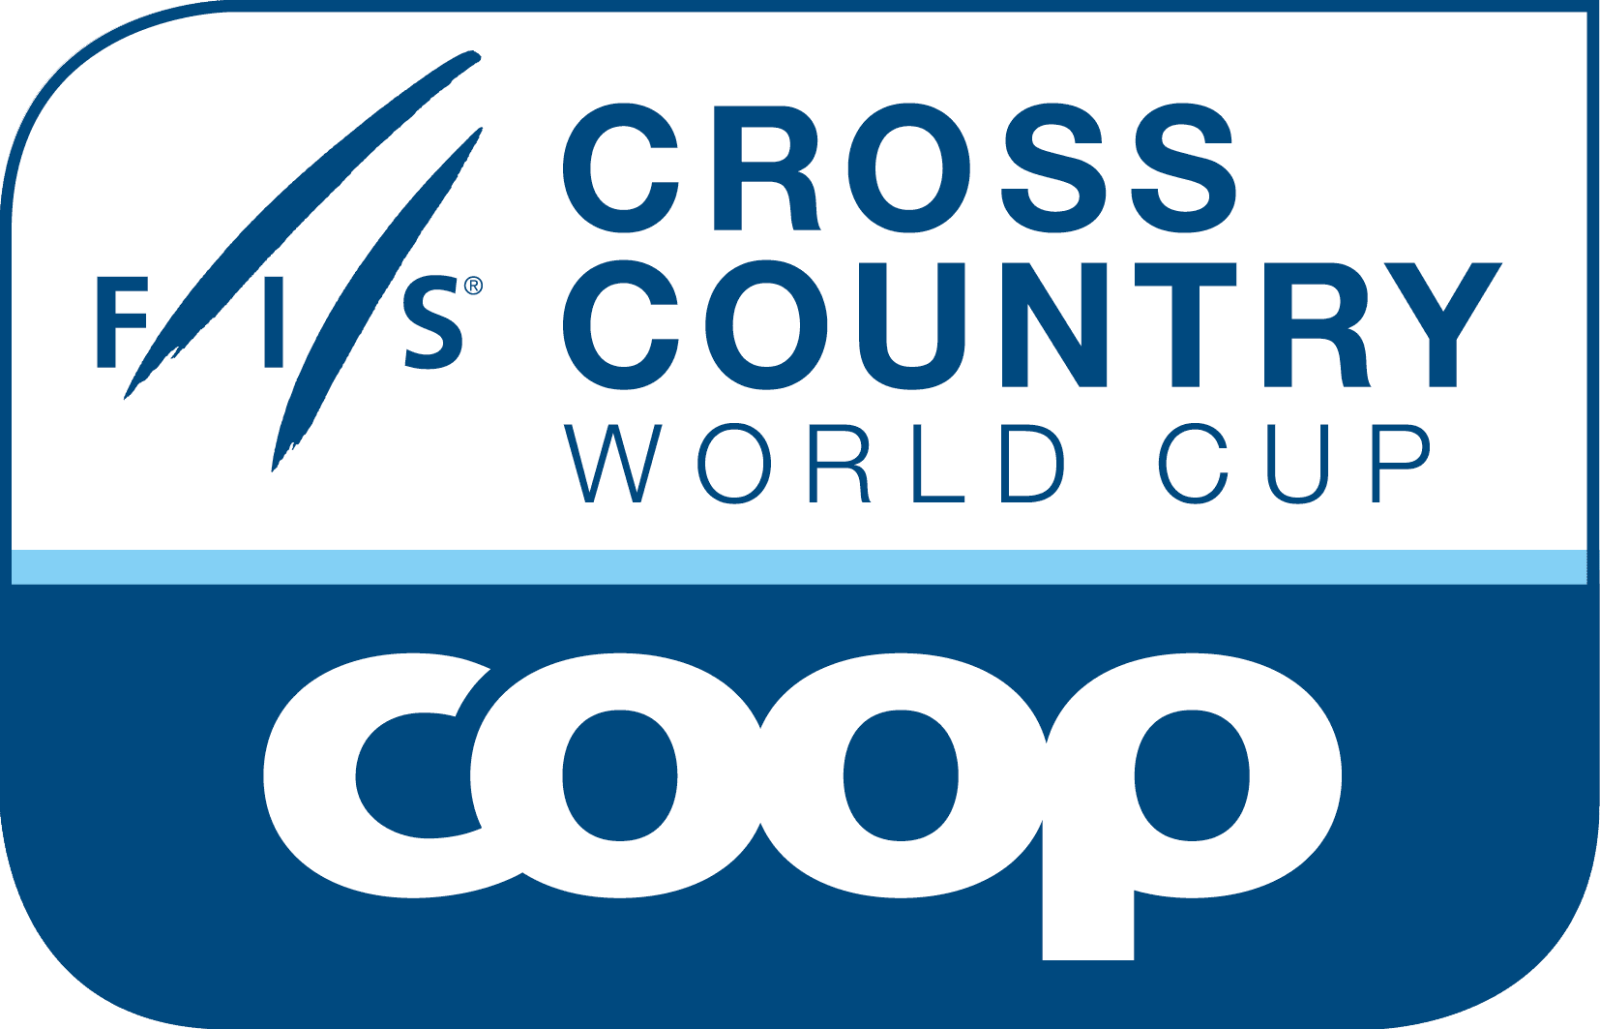 Международная федерация лыжного. Fis Cross Country World Cup logo. Fis Cross-Country World Cup Coop. Логотип ФИСУ. Международная Федерация лыжного спорта.